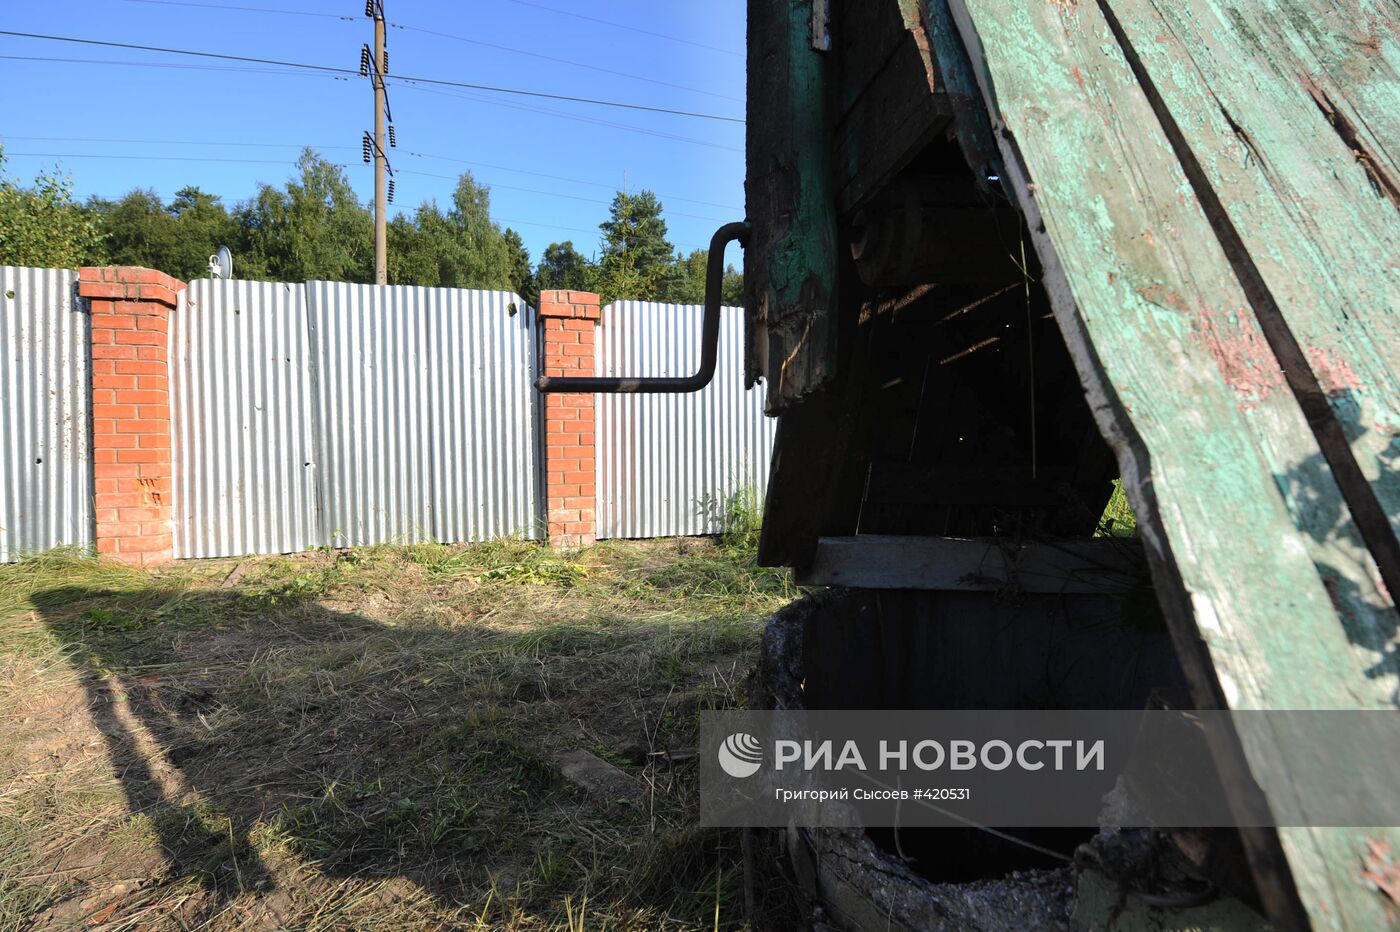 Артиллерийский снаряд попал в двор жилого дома в Подмосковье